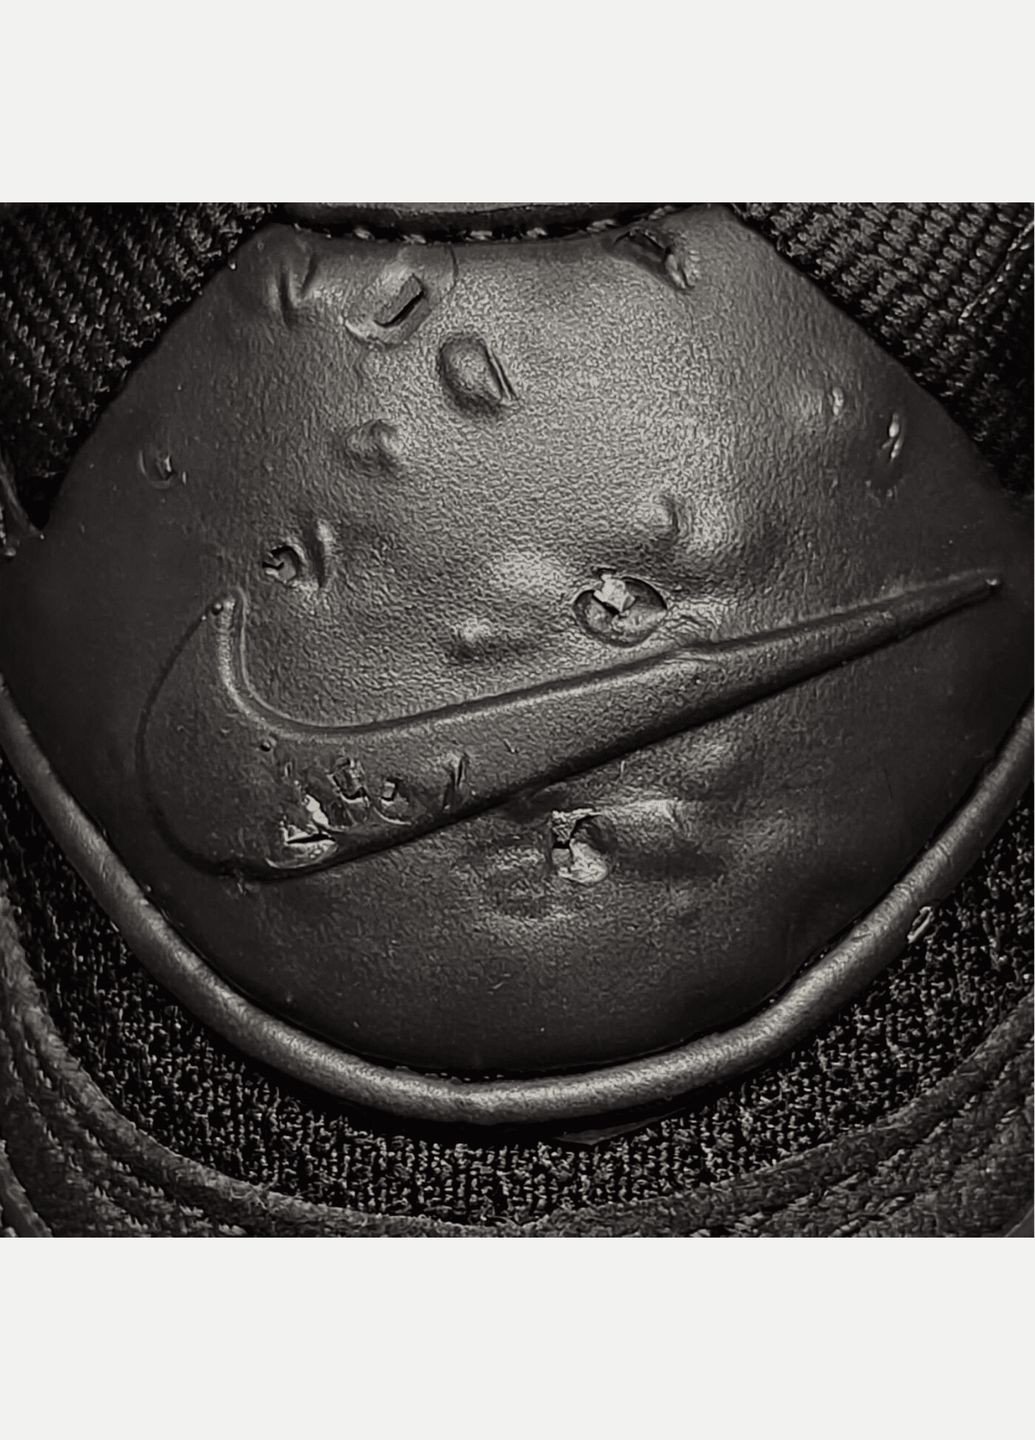 Синій всесезон кросівки чоловічі air max terrascape 90 dq3987-002 весна-осінь текстиль синтетика чорні Nike